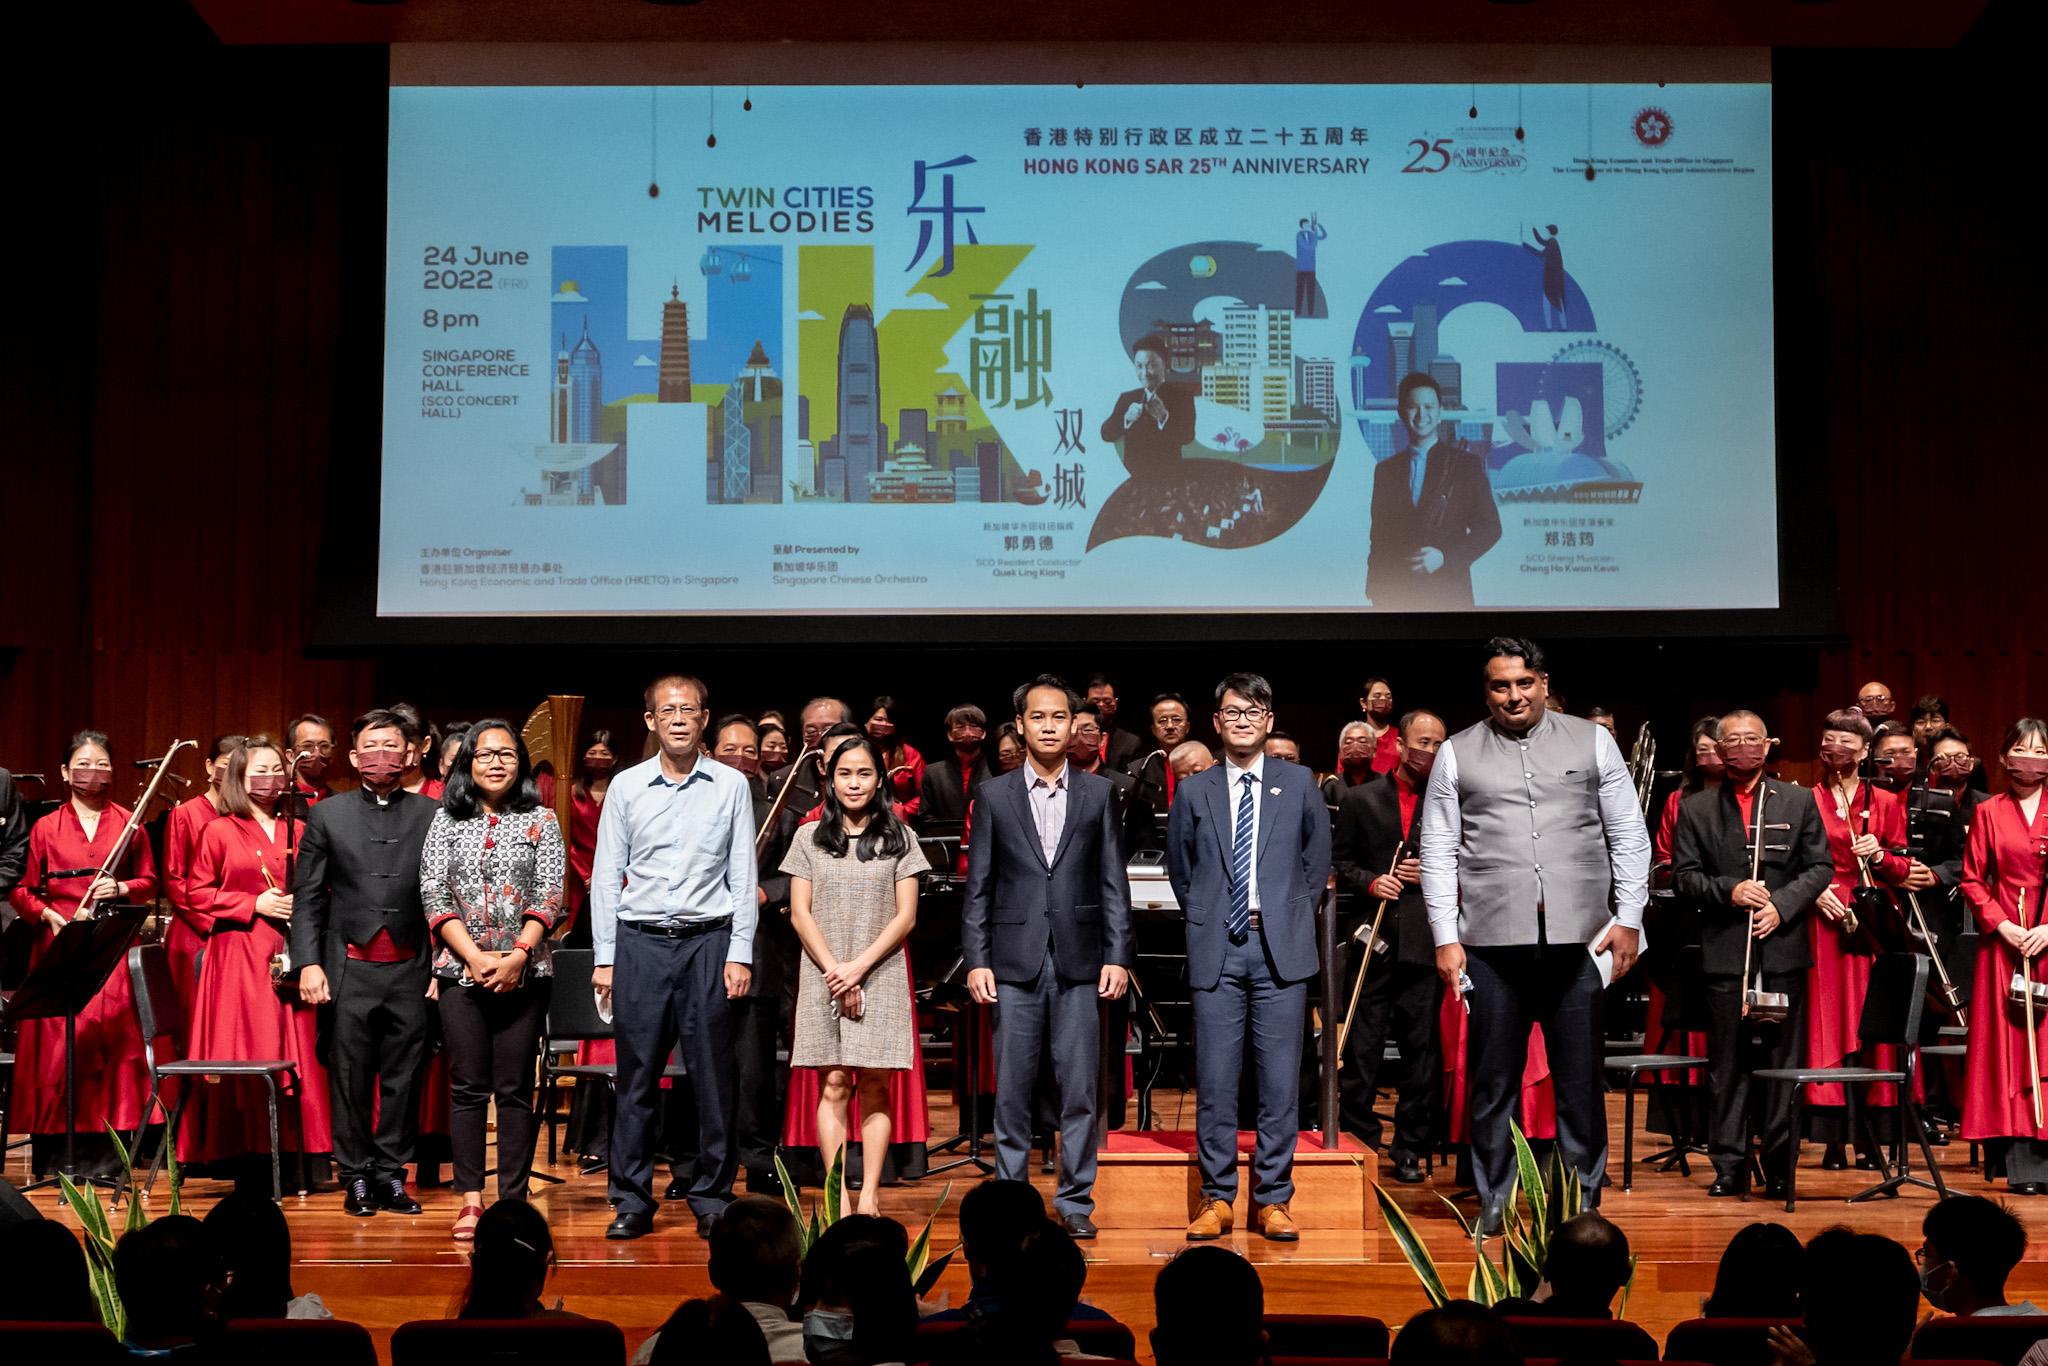 为庆祝香港特别行政区成立二十五周年， 香港驻新加坡经济贸易办事处（驻新加坡经贸办）今日（六月二十四日）举行「乐融双城」中乐音乐会。图示驻新加坡经贸办处长黄俊涛（右二）、印尼驻新加坡大使馆公使衔参赞 Hastin Dumadi（右六）、印度驻新加坡最高专员公署参赞 Nitinjeet Singh（右一）、老挝驻新加坡大使馆二等秘书 Nikone Keopanya（右三）及Malaychanh Phetxomphou（右四），及新加坡中国文化中心副主任周政（右五）合照。